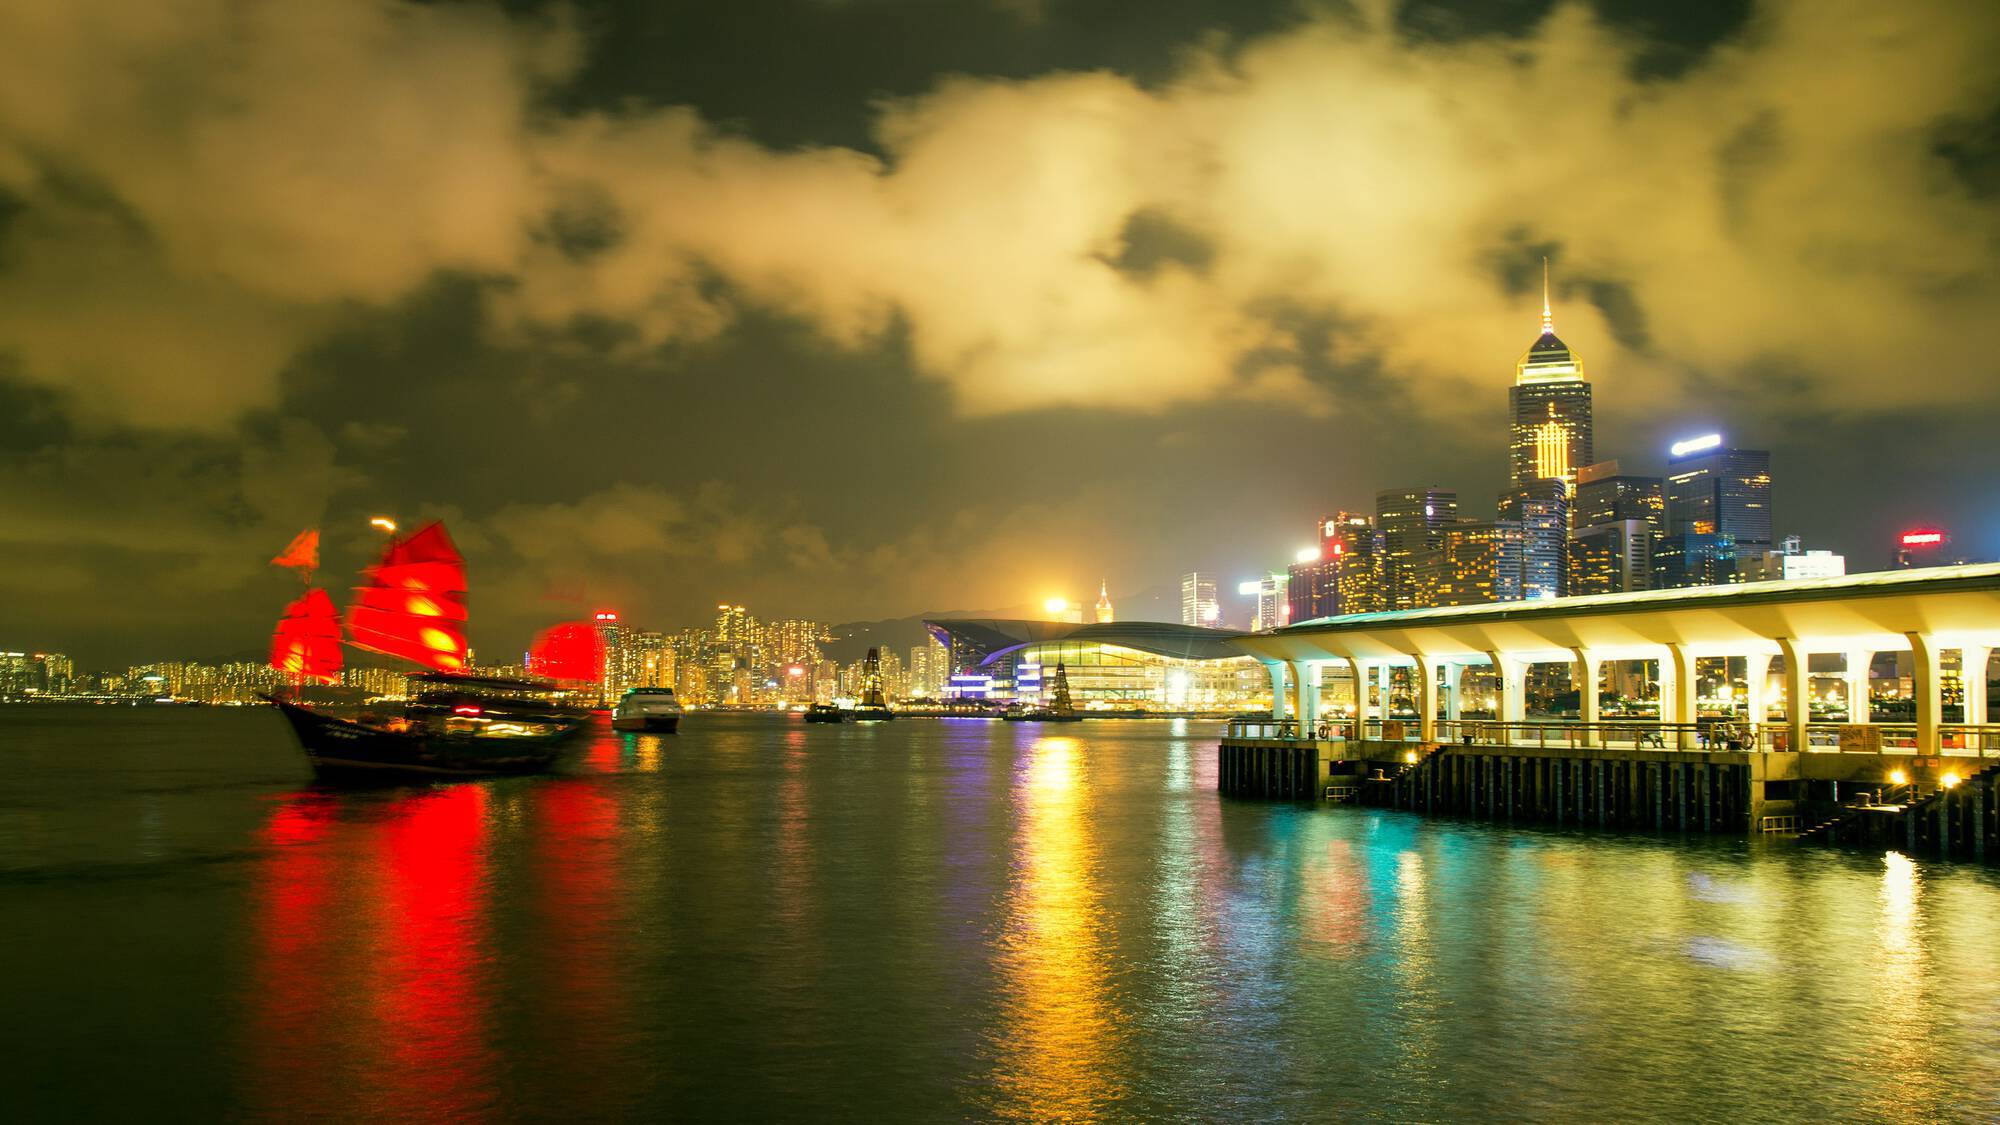 Hong Kong Kowloon Bay at night